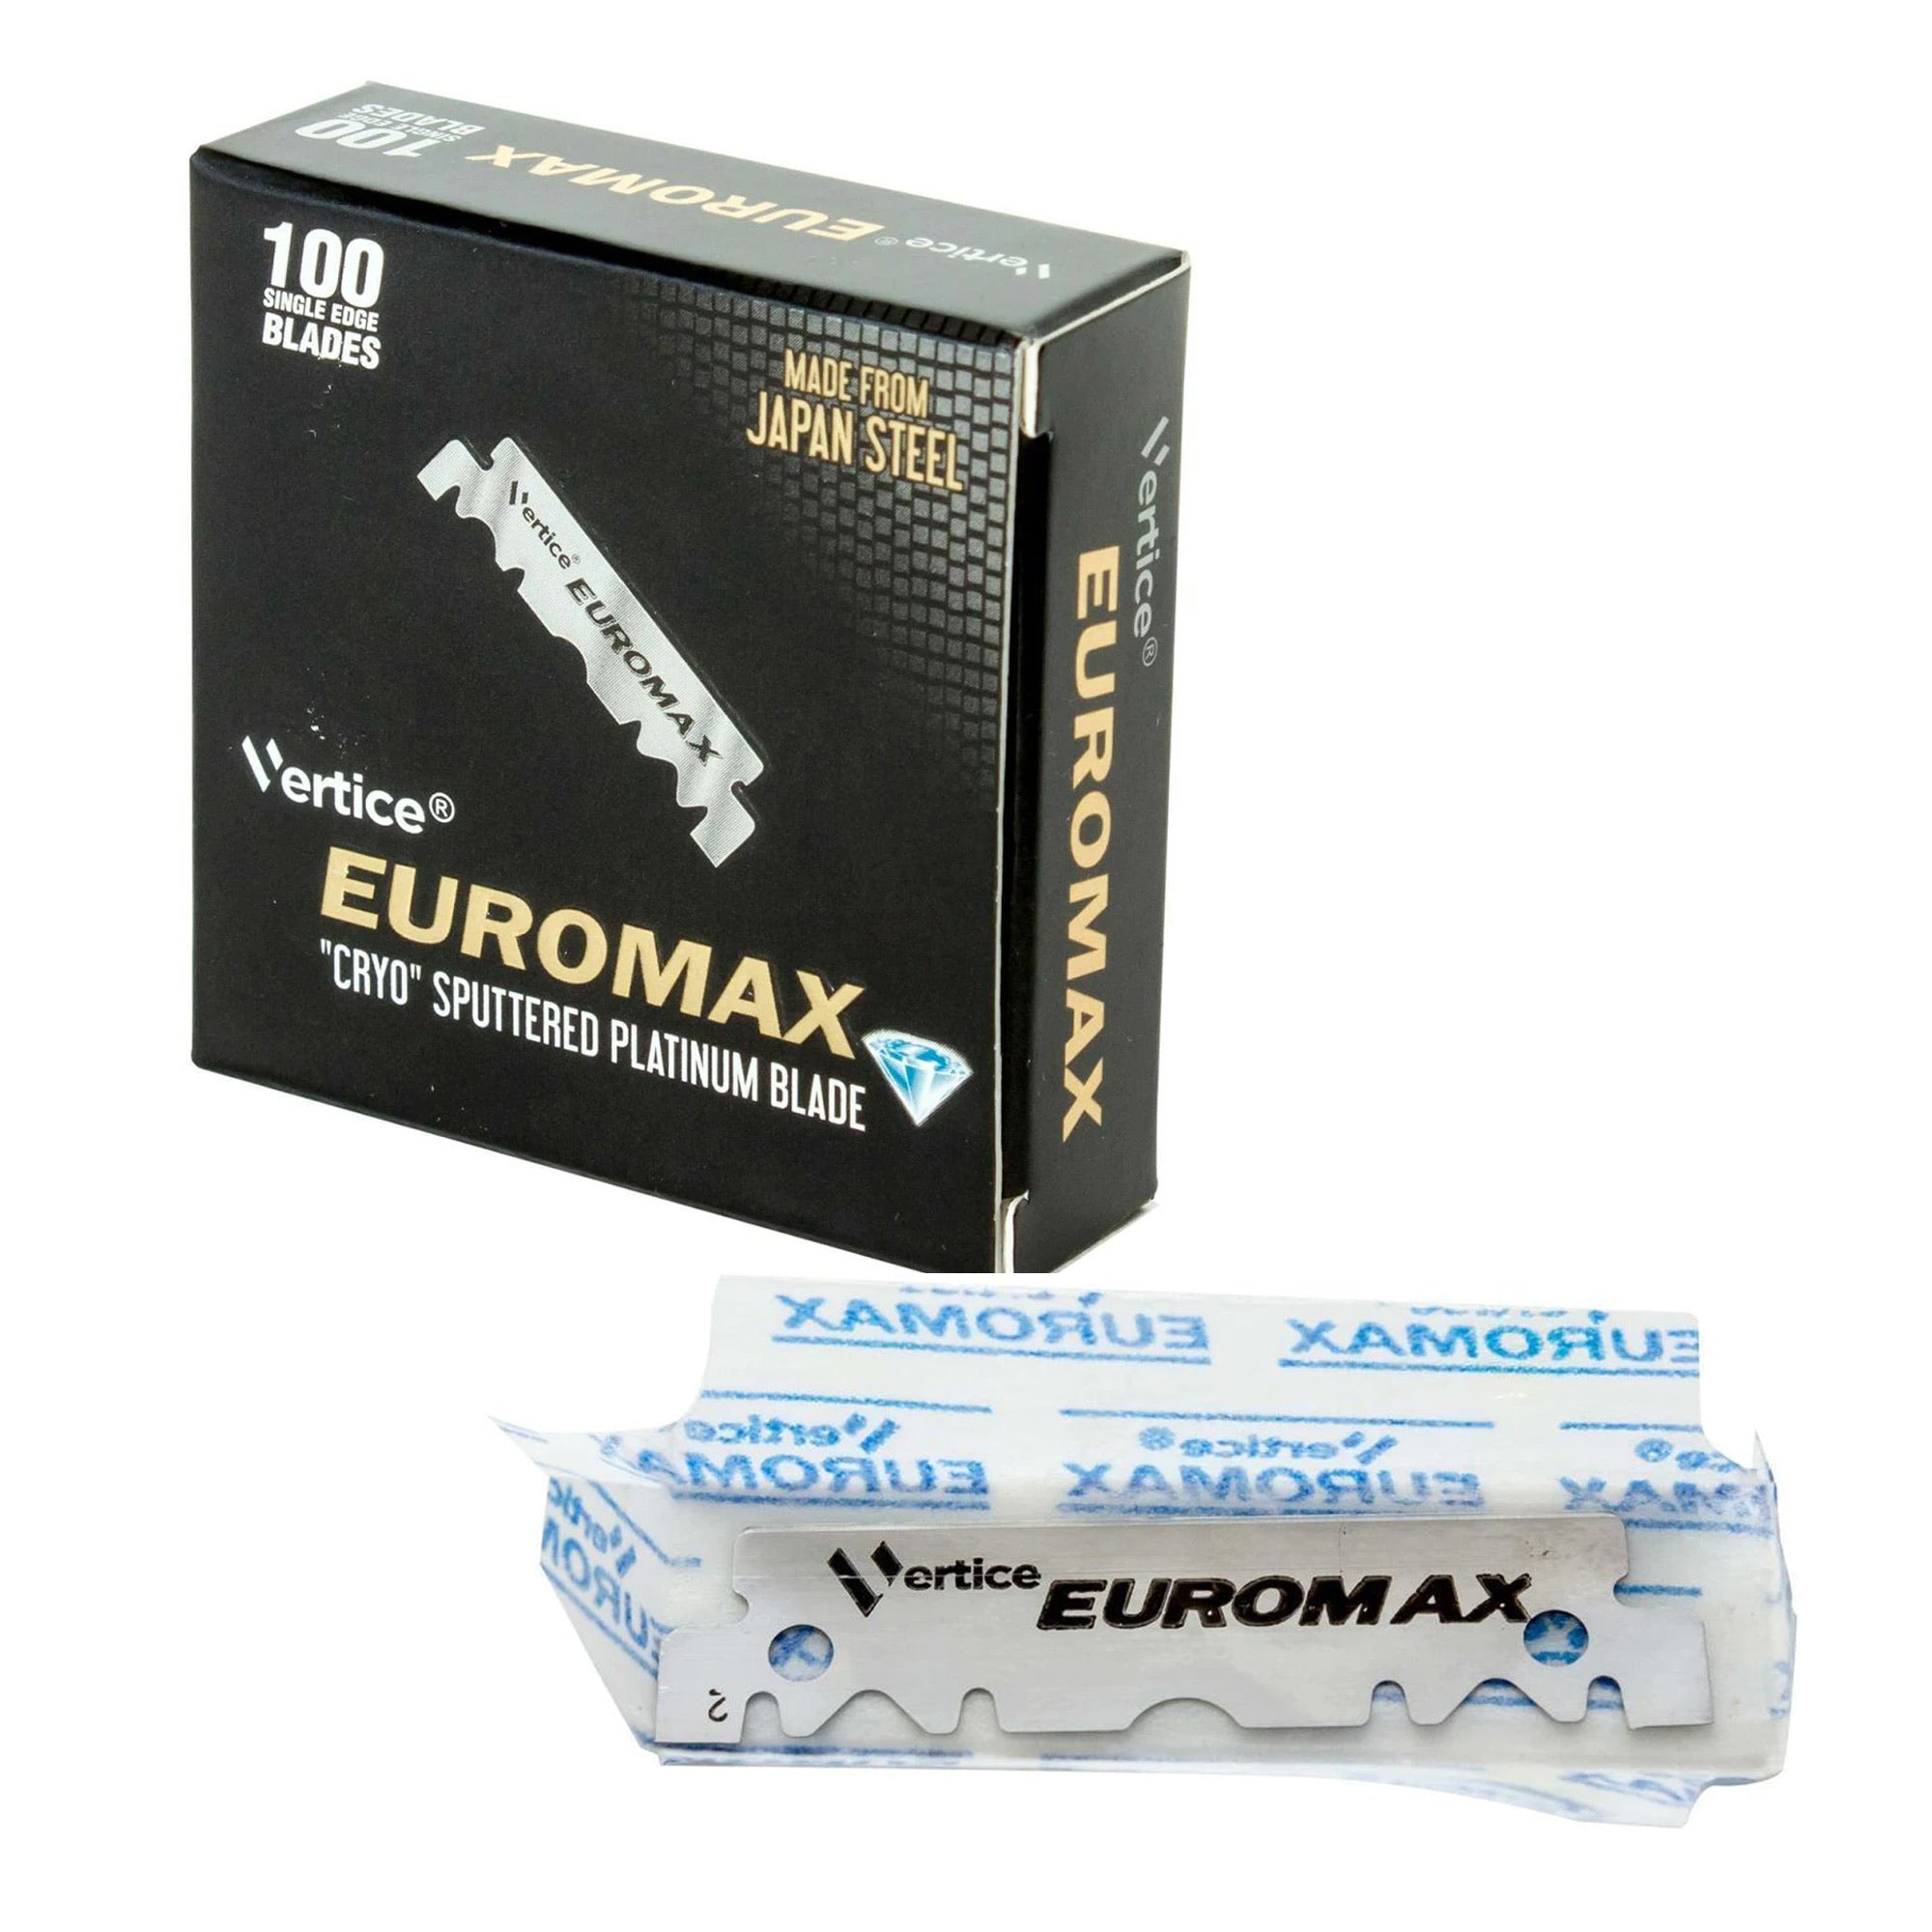 Euromax - Single Edge Razor Blades (100pcs)